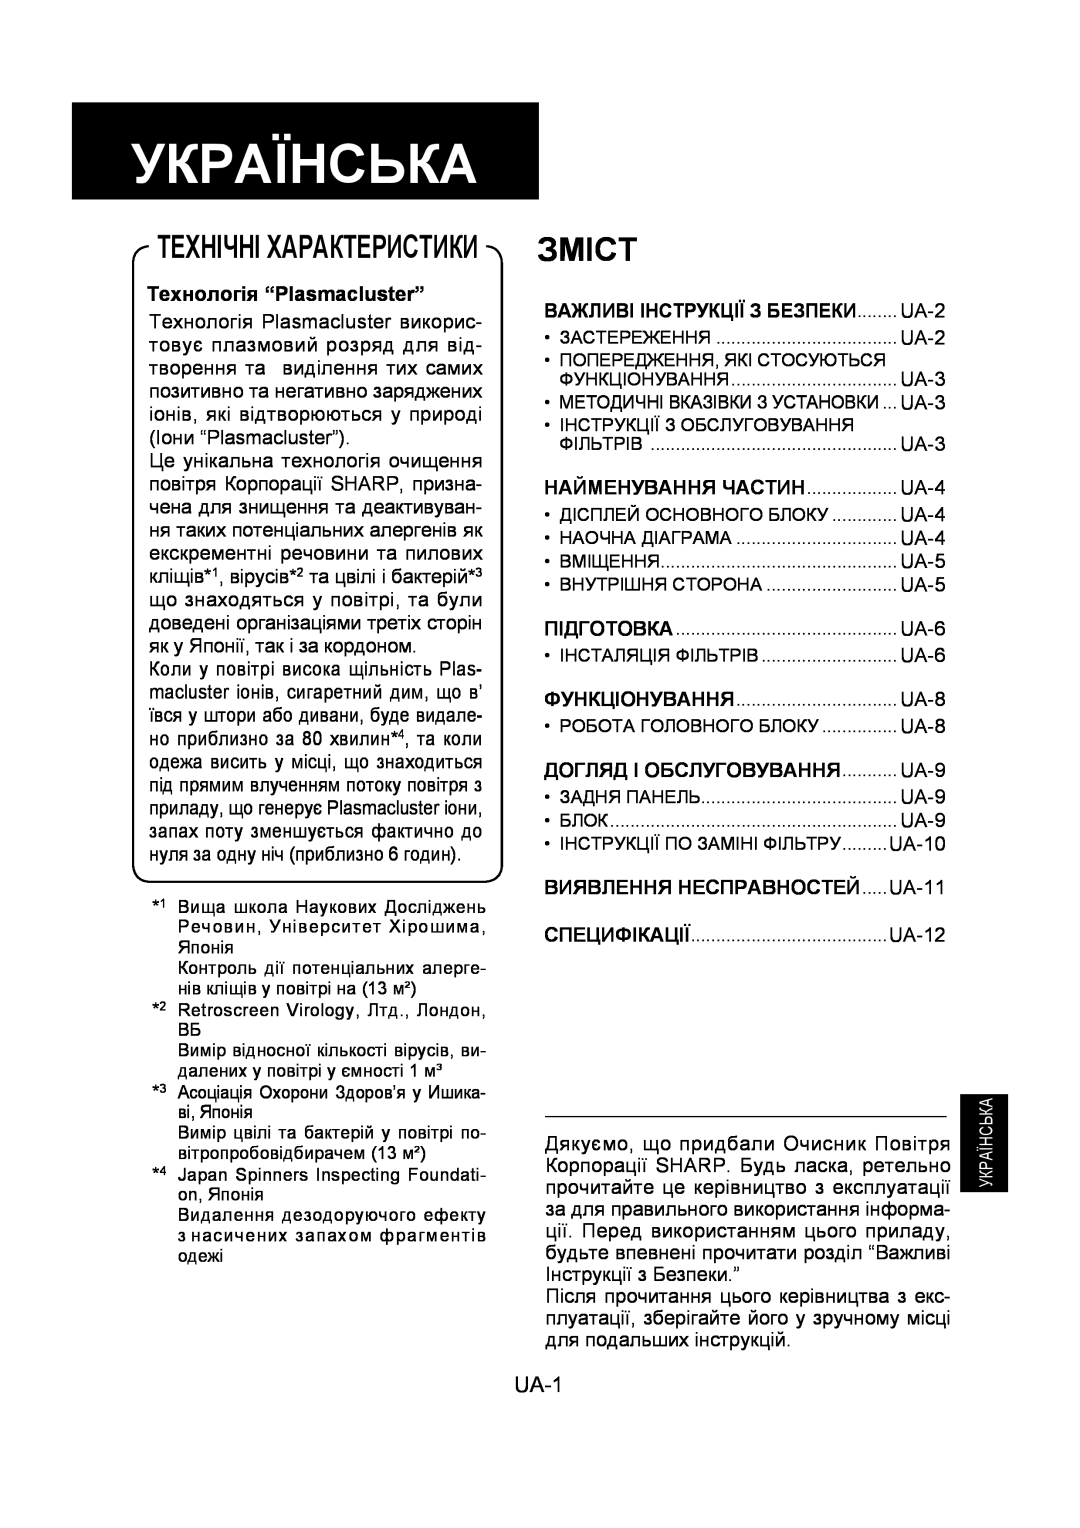 Sharp FU-Y30EU operation manual Українська, Зміст, Технічні Характеристики, UA-1, Технологія “Plasmacluster” 